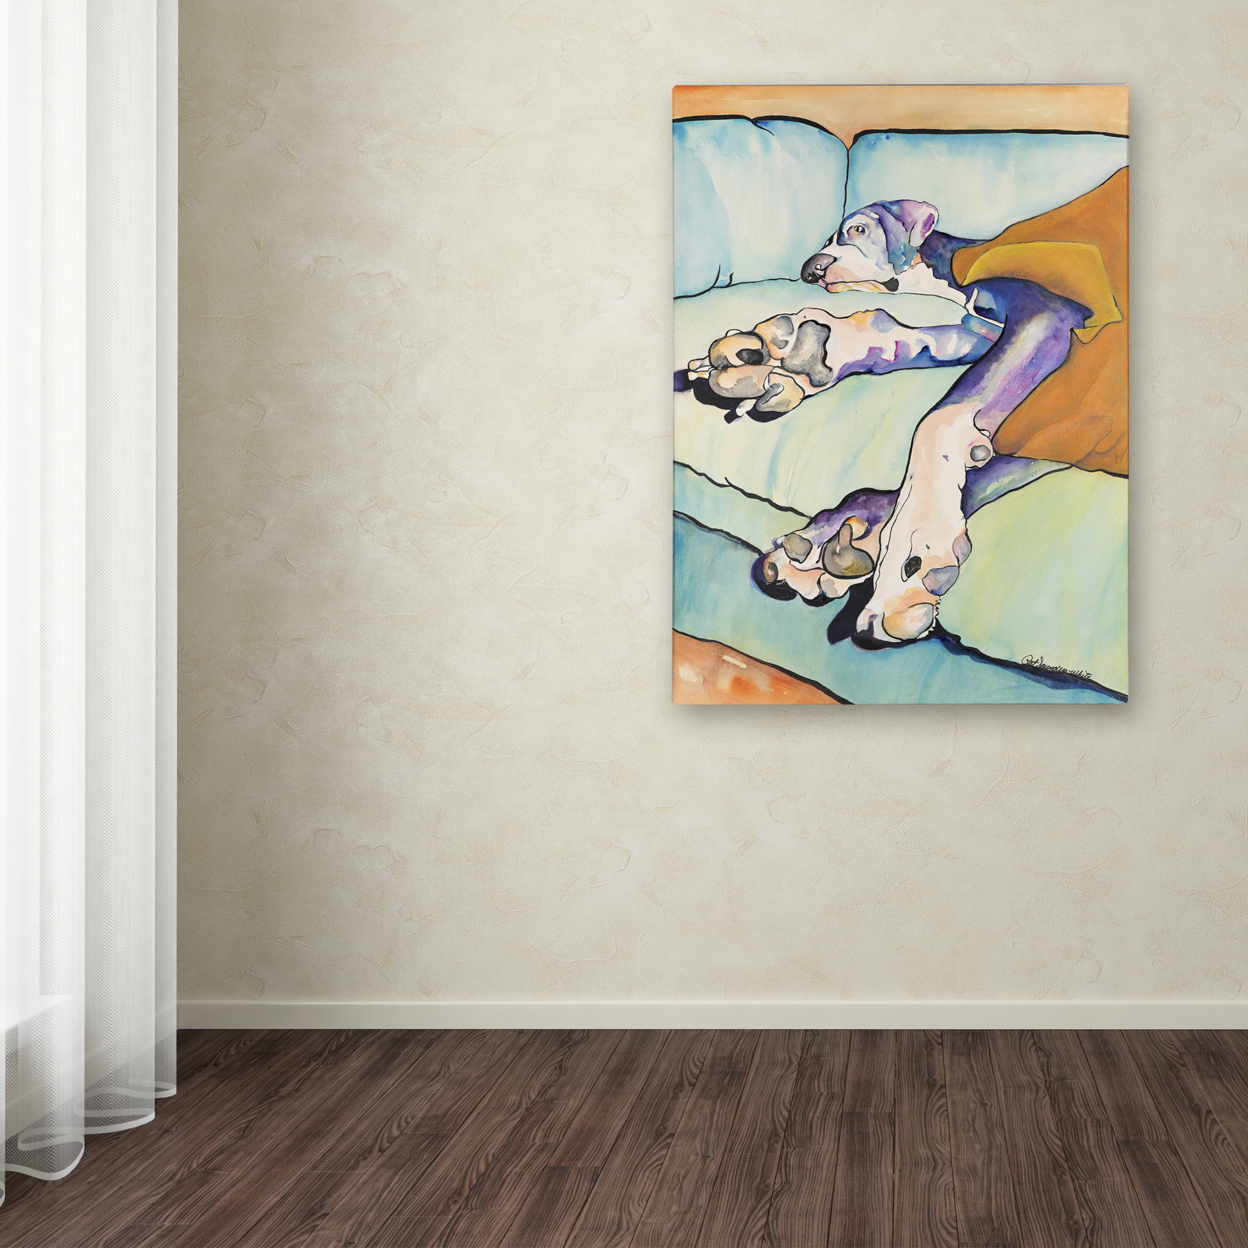 Pat Saunders-White 'Sweet Sleep II' Canvas Wall Art 35 X 47 Inches